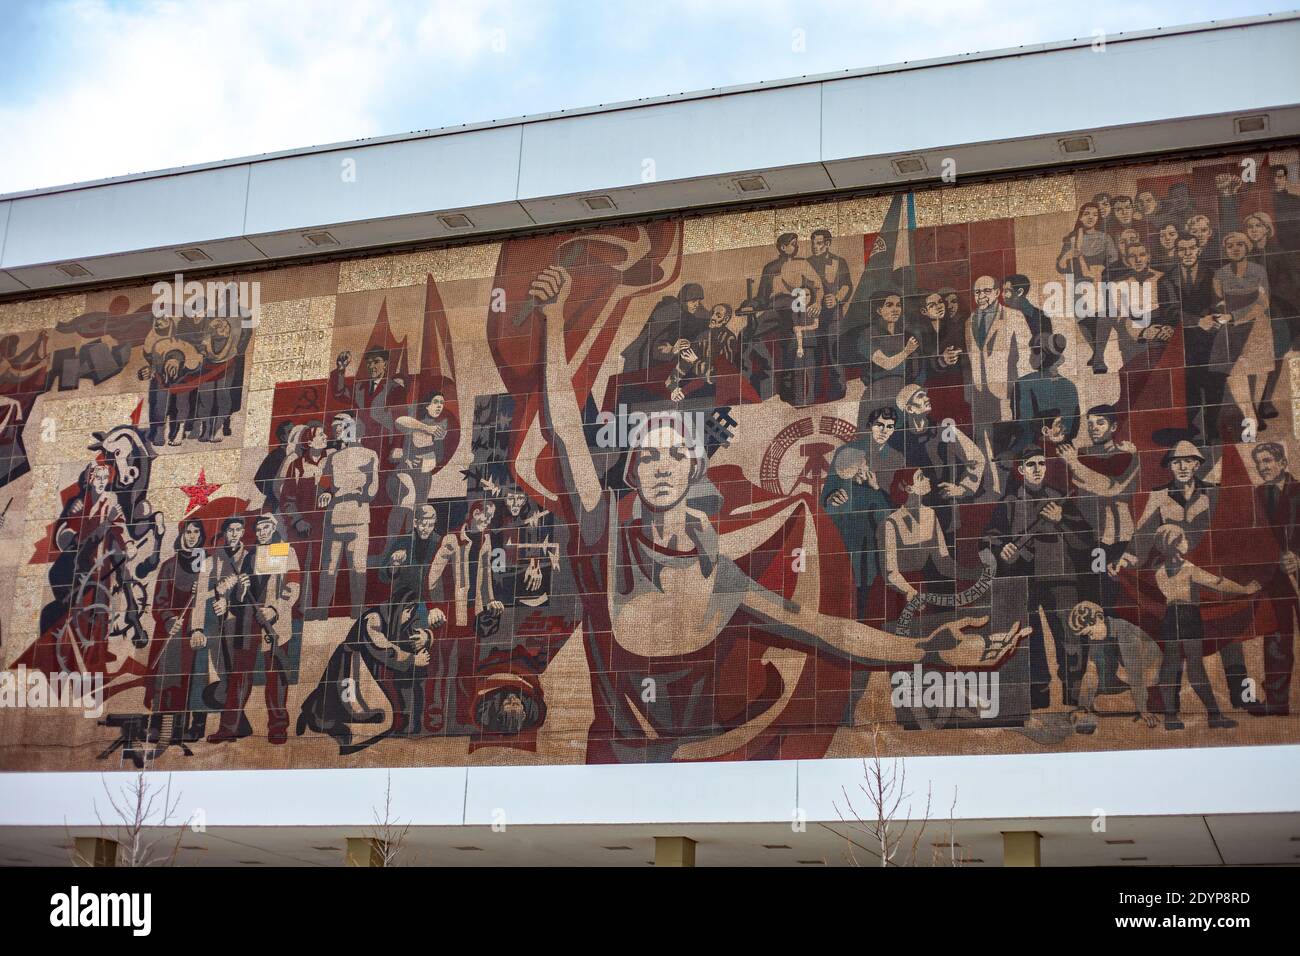 Murale de l'ère communiste sur le mur du Kulturpalast à Dresde, en Allemagne. Photographié un jour de forte luminosité. Banque D'Images